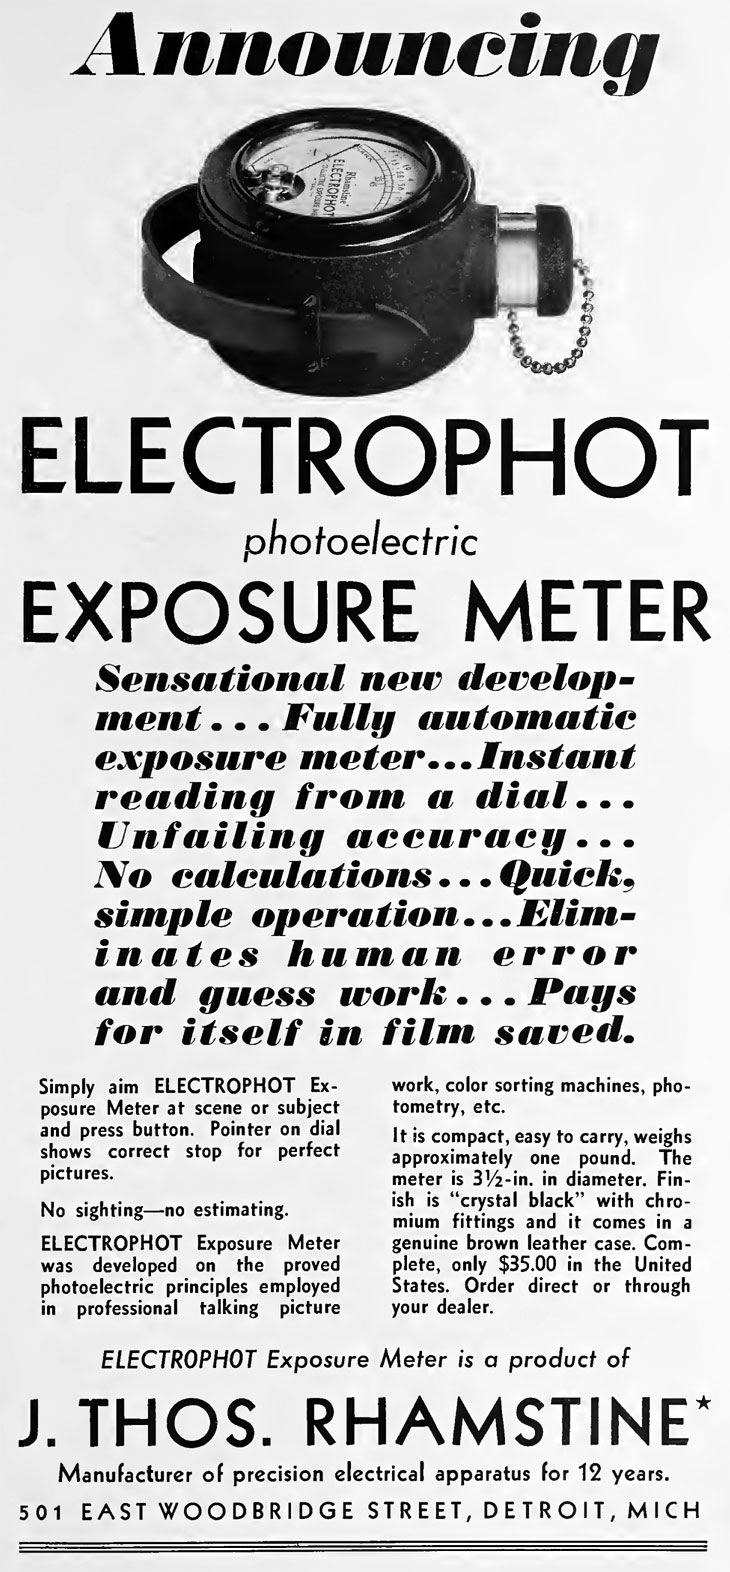 Electrophot original version - Sept 1931 